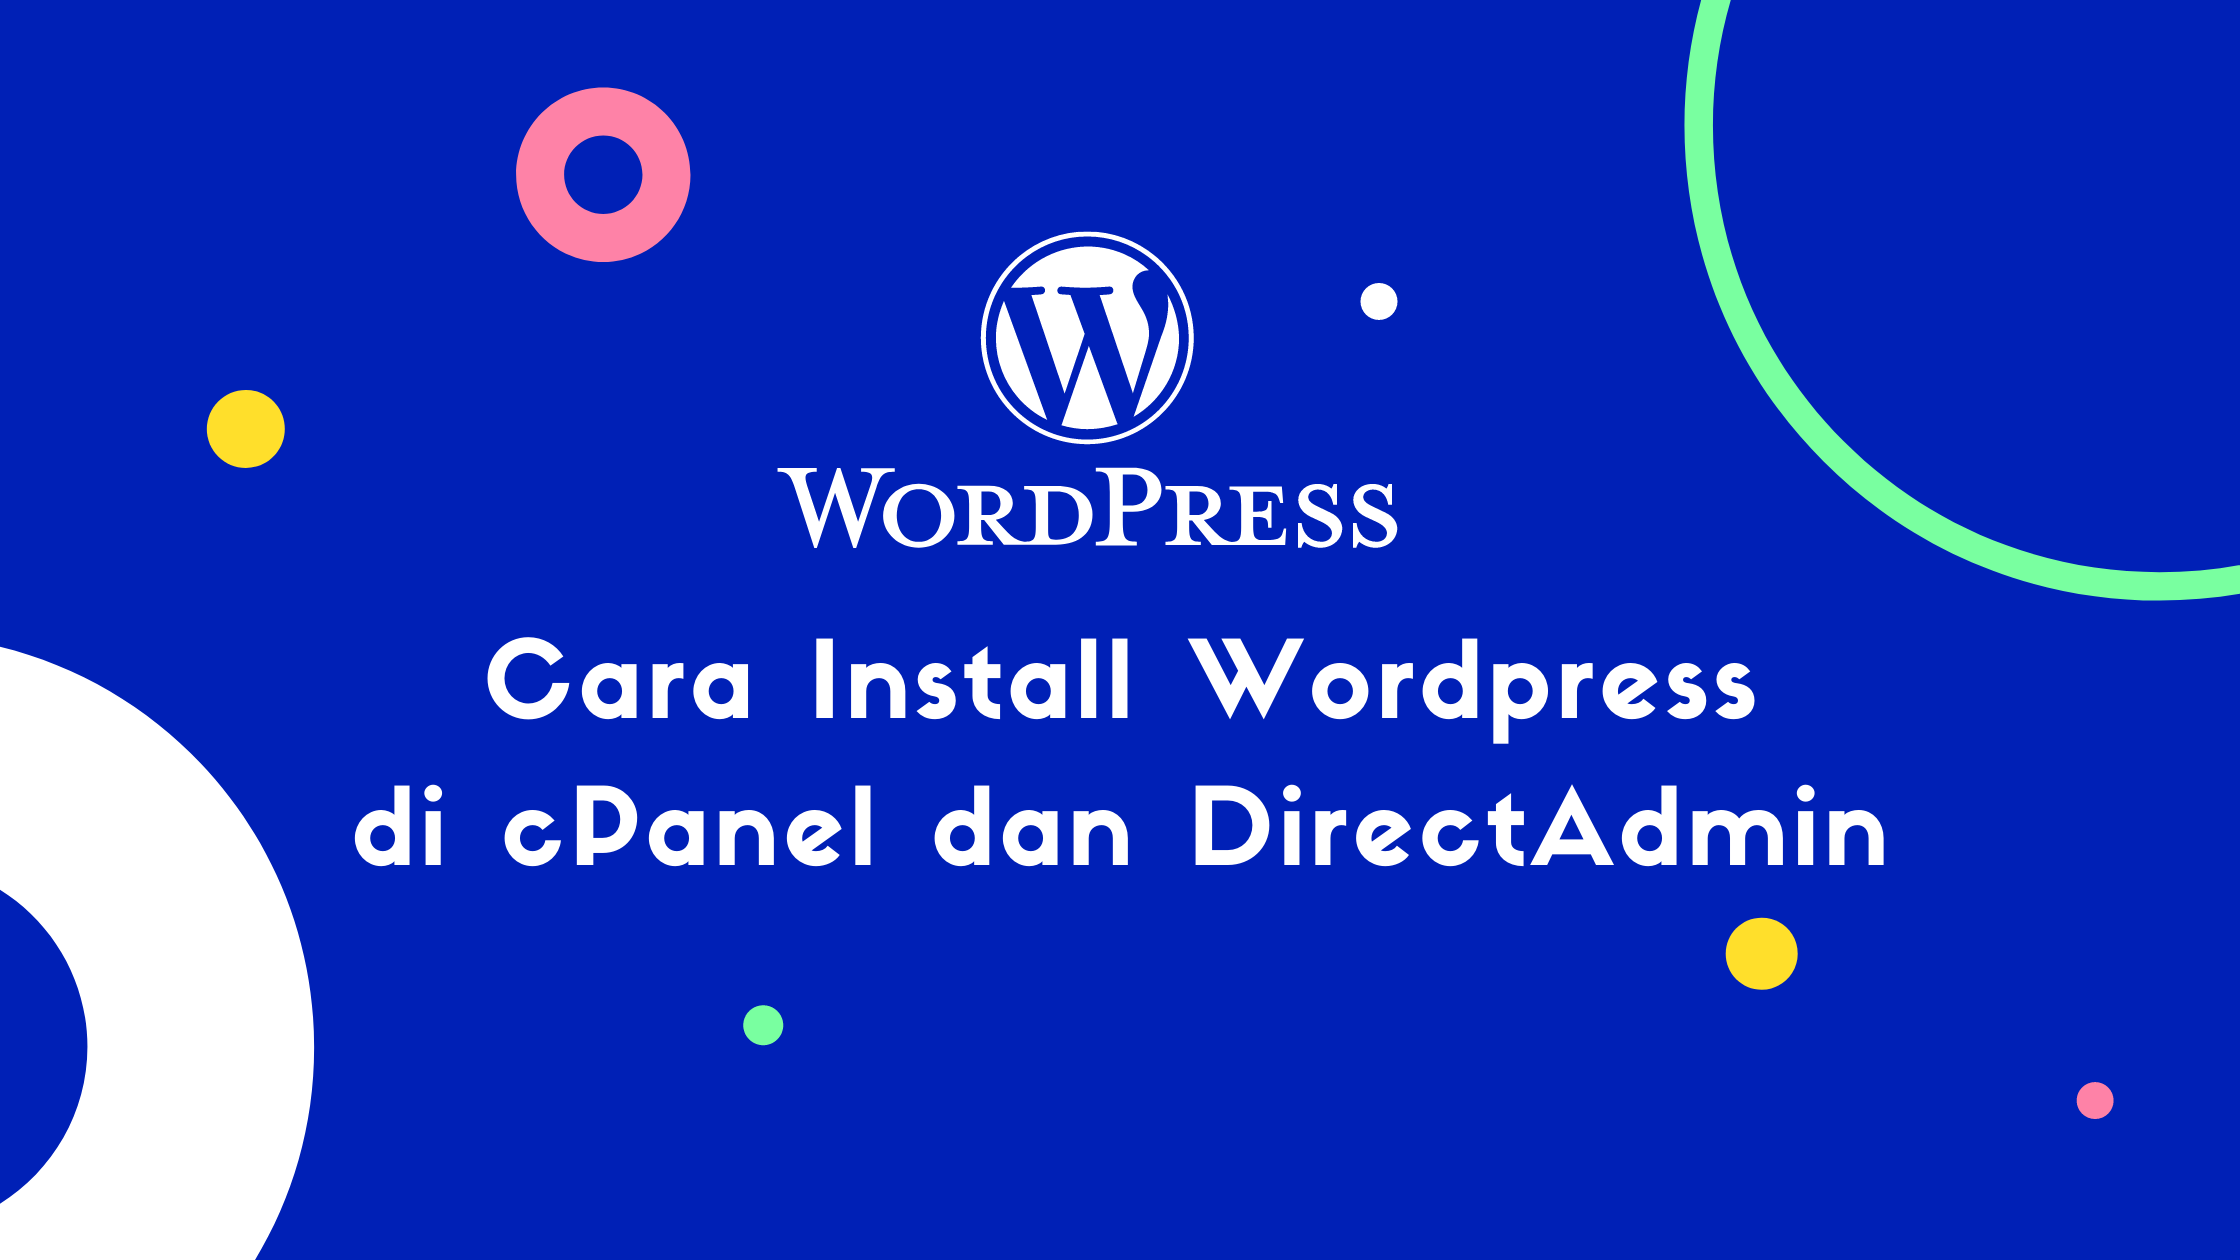 Cara Install Wordpress di cPanel dan DirectAdmin Cara Install Wordpress di cPanel dan DirectAdmin